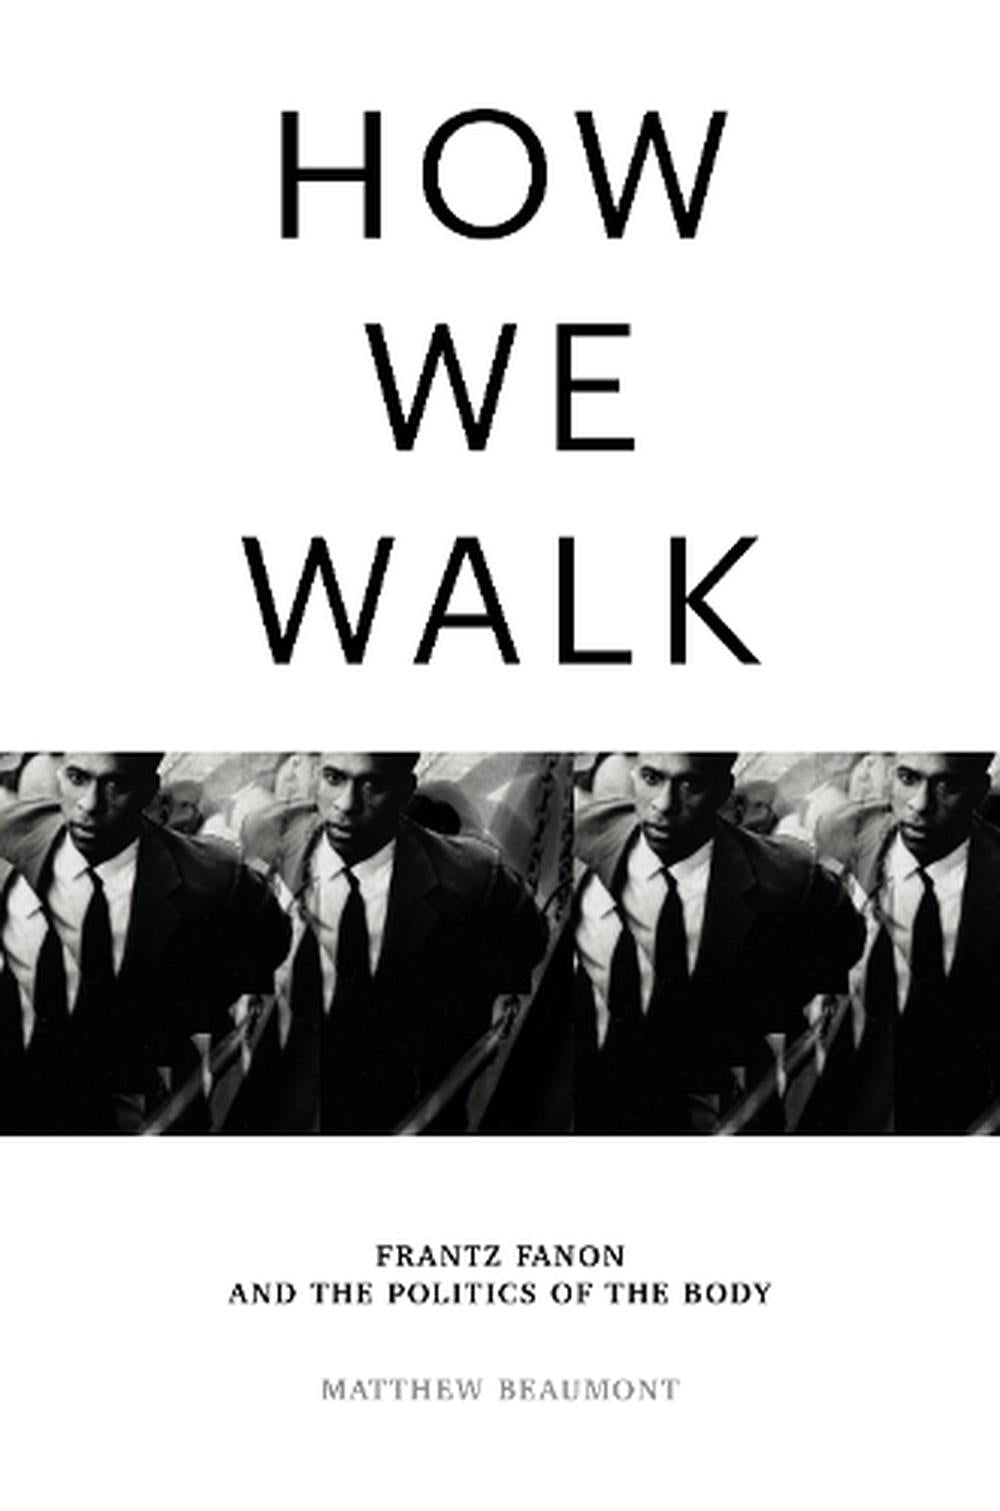 How We Walk: Frantz Fanon and the Politics of the Body ร้านหนังสือและสิ่งของ เป็นร้านหนังสือภาษาอังกฤษหายาก และร้านกาแฟ หรือ บุ๊คคาเฟ่ ตั้งอยู่สุขุมวิท กรุงเทพ